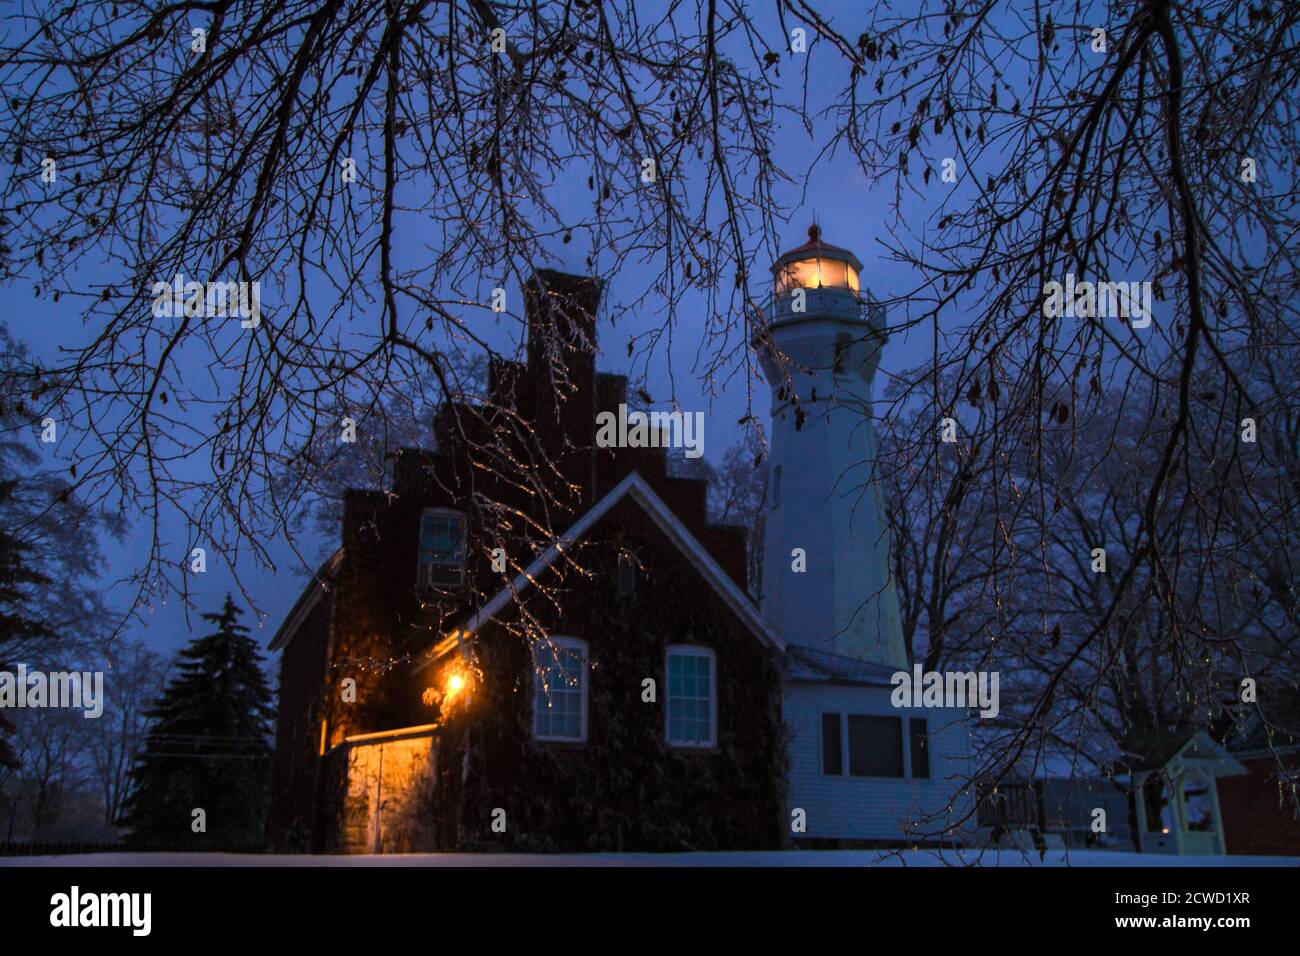 Port Sanilac, Michigan, EE.UU. - 12 de diciembre de 2013: Faro iluminado del Faro de Port Sanilac rodeado de caricles en una fría noche de invierno. Foto de stock